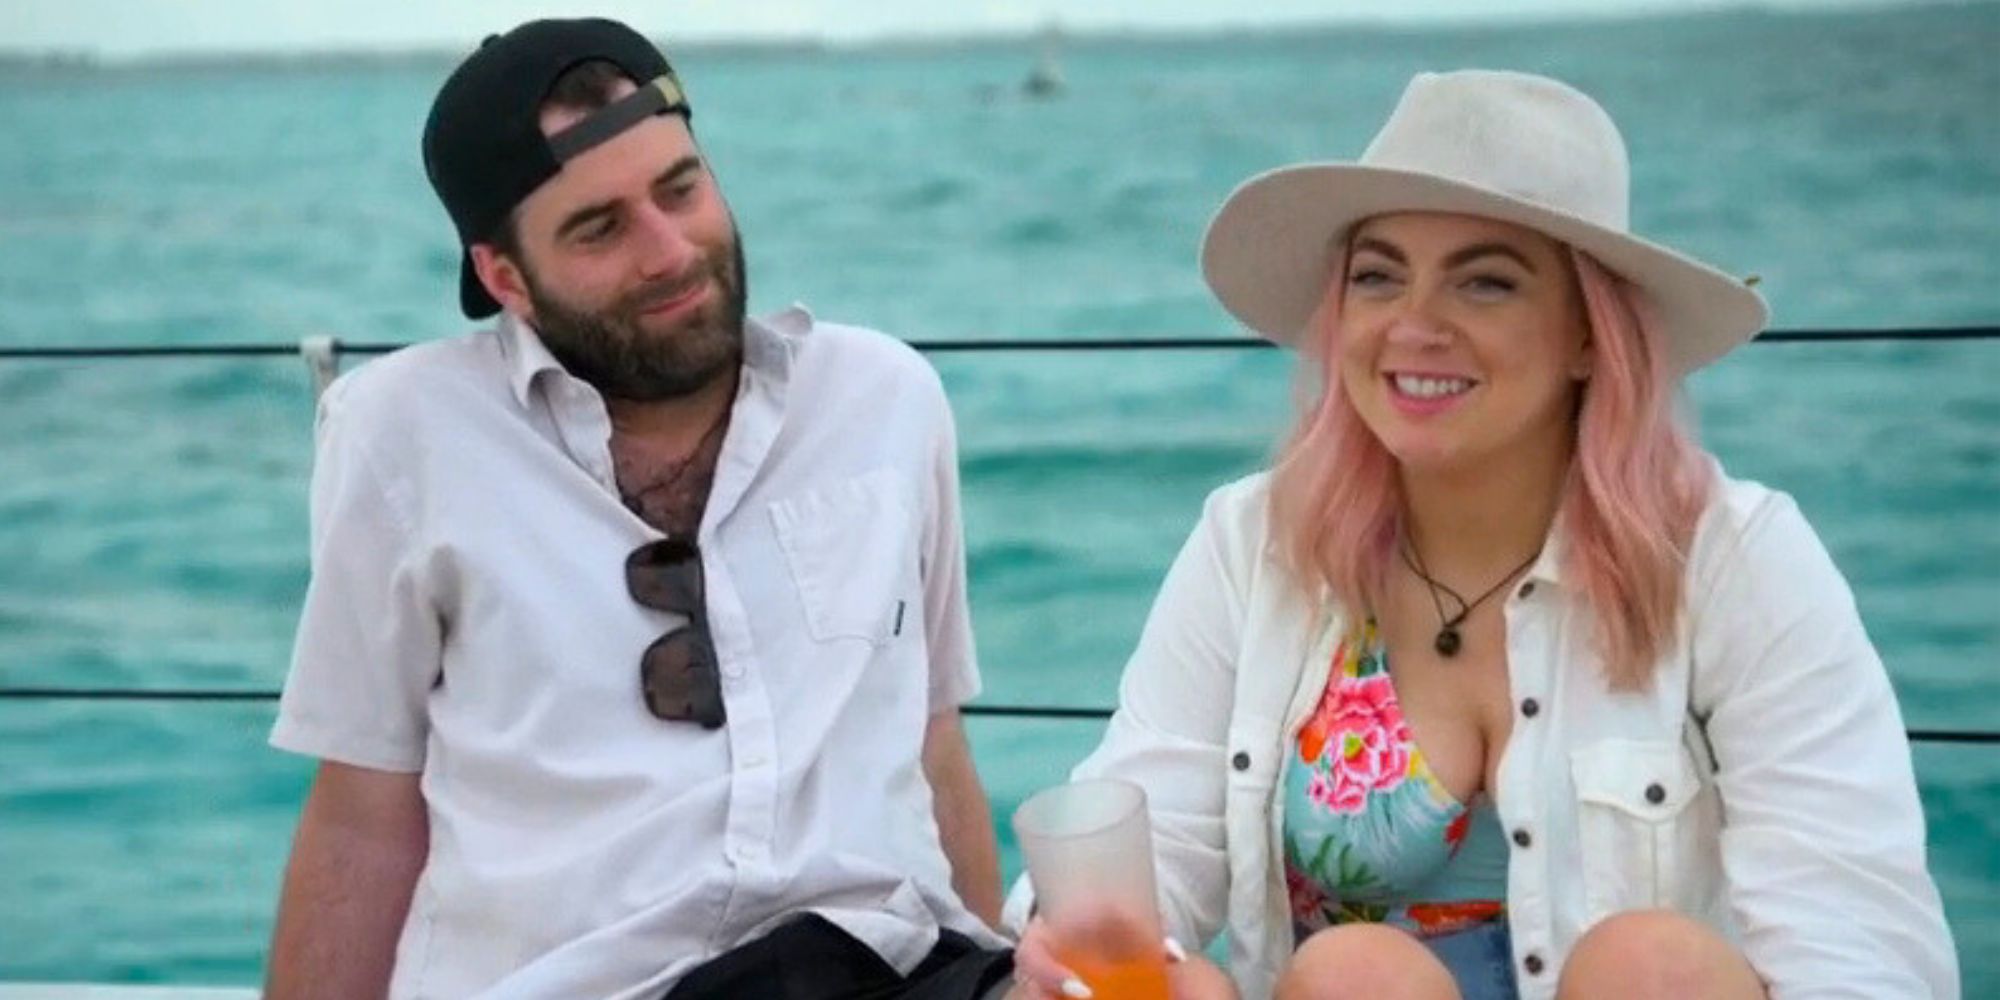 Becca y Austin de MArried at First Sight temporada 17 sentados en un barco hablando